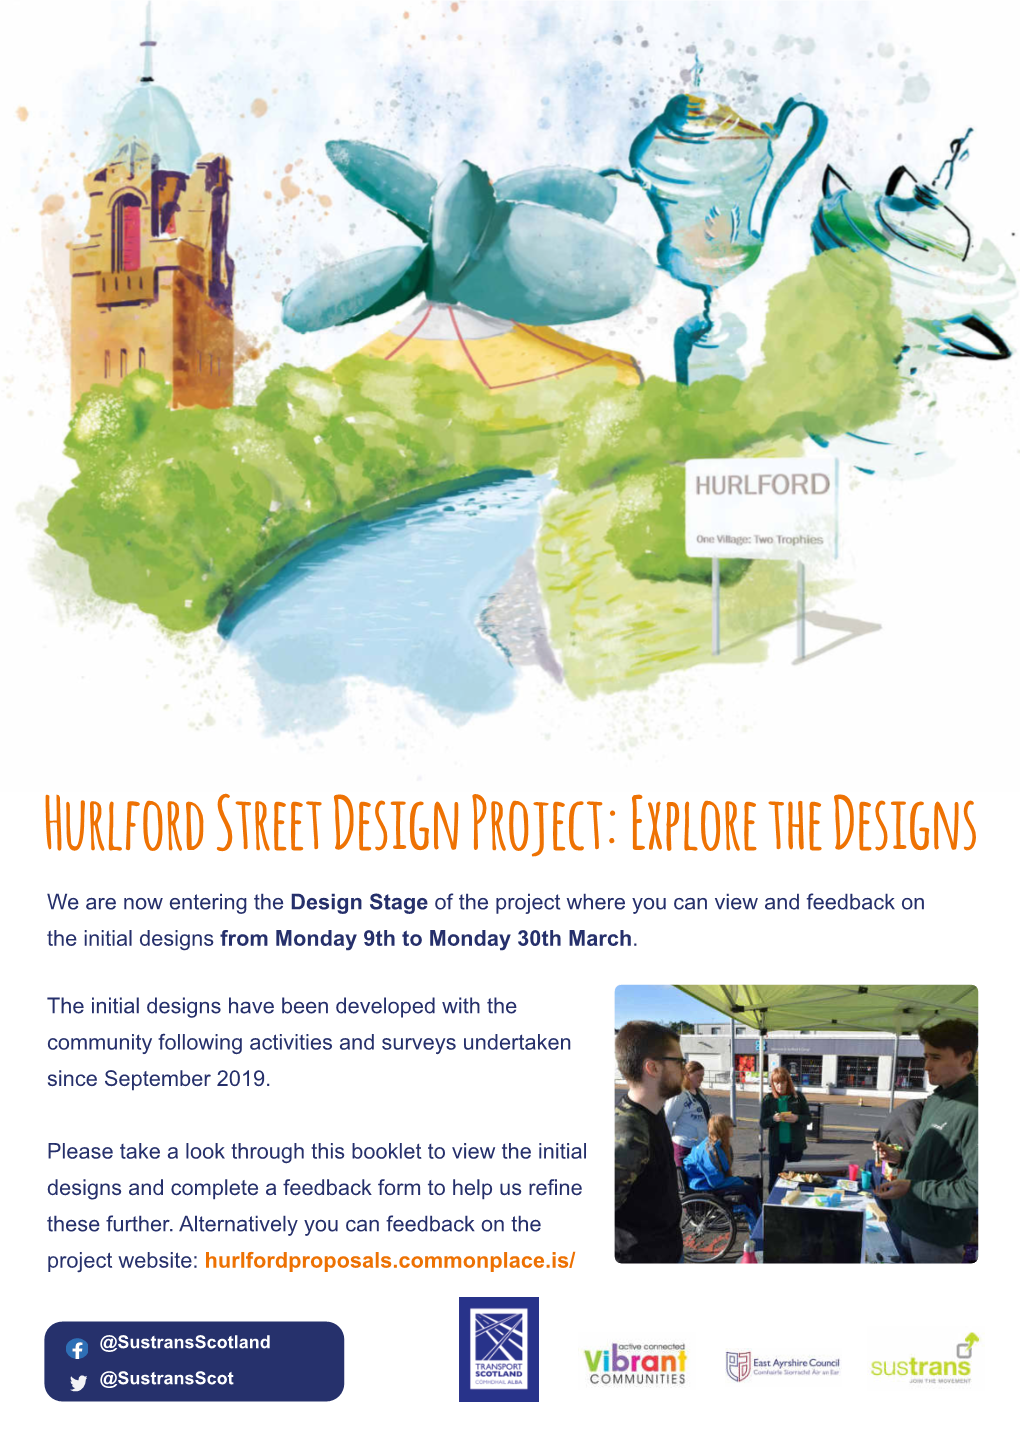 Hurlford Street Design Project: Explore the Designs